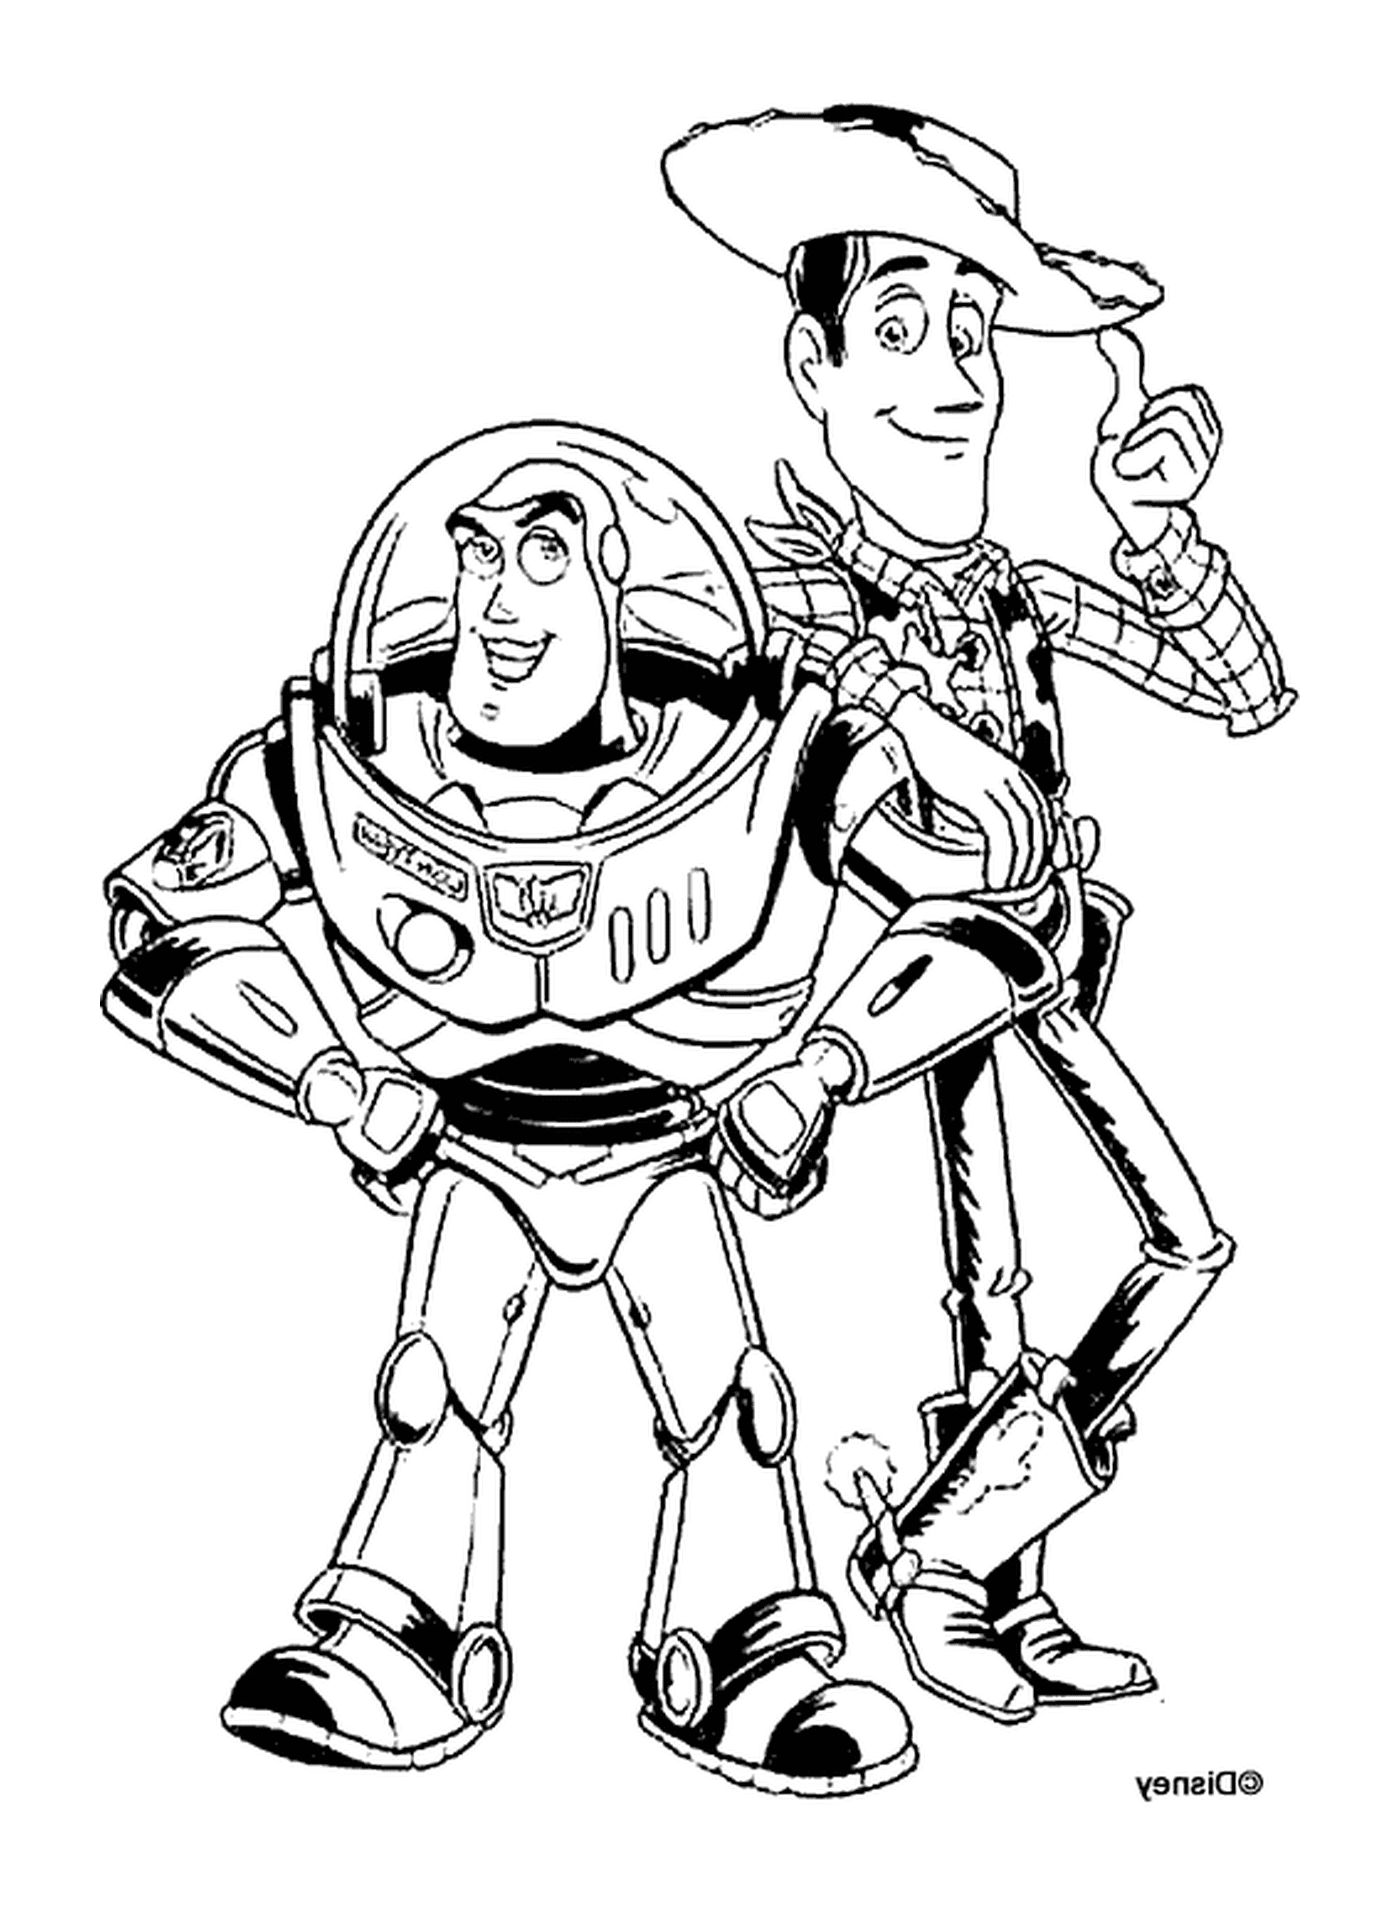   Buzz l'Éclair et Woody, duo légendaire 